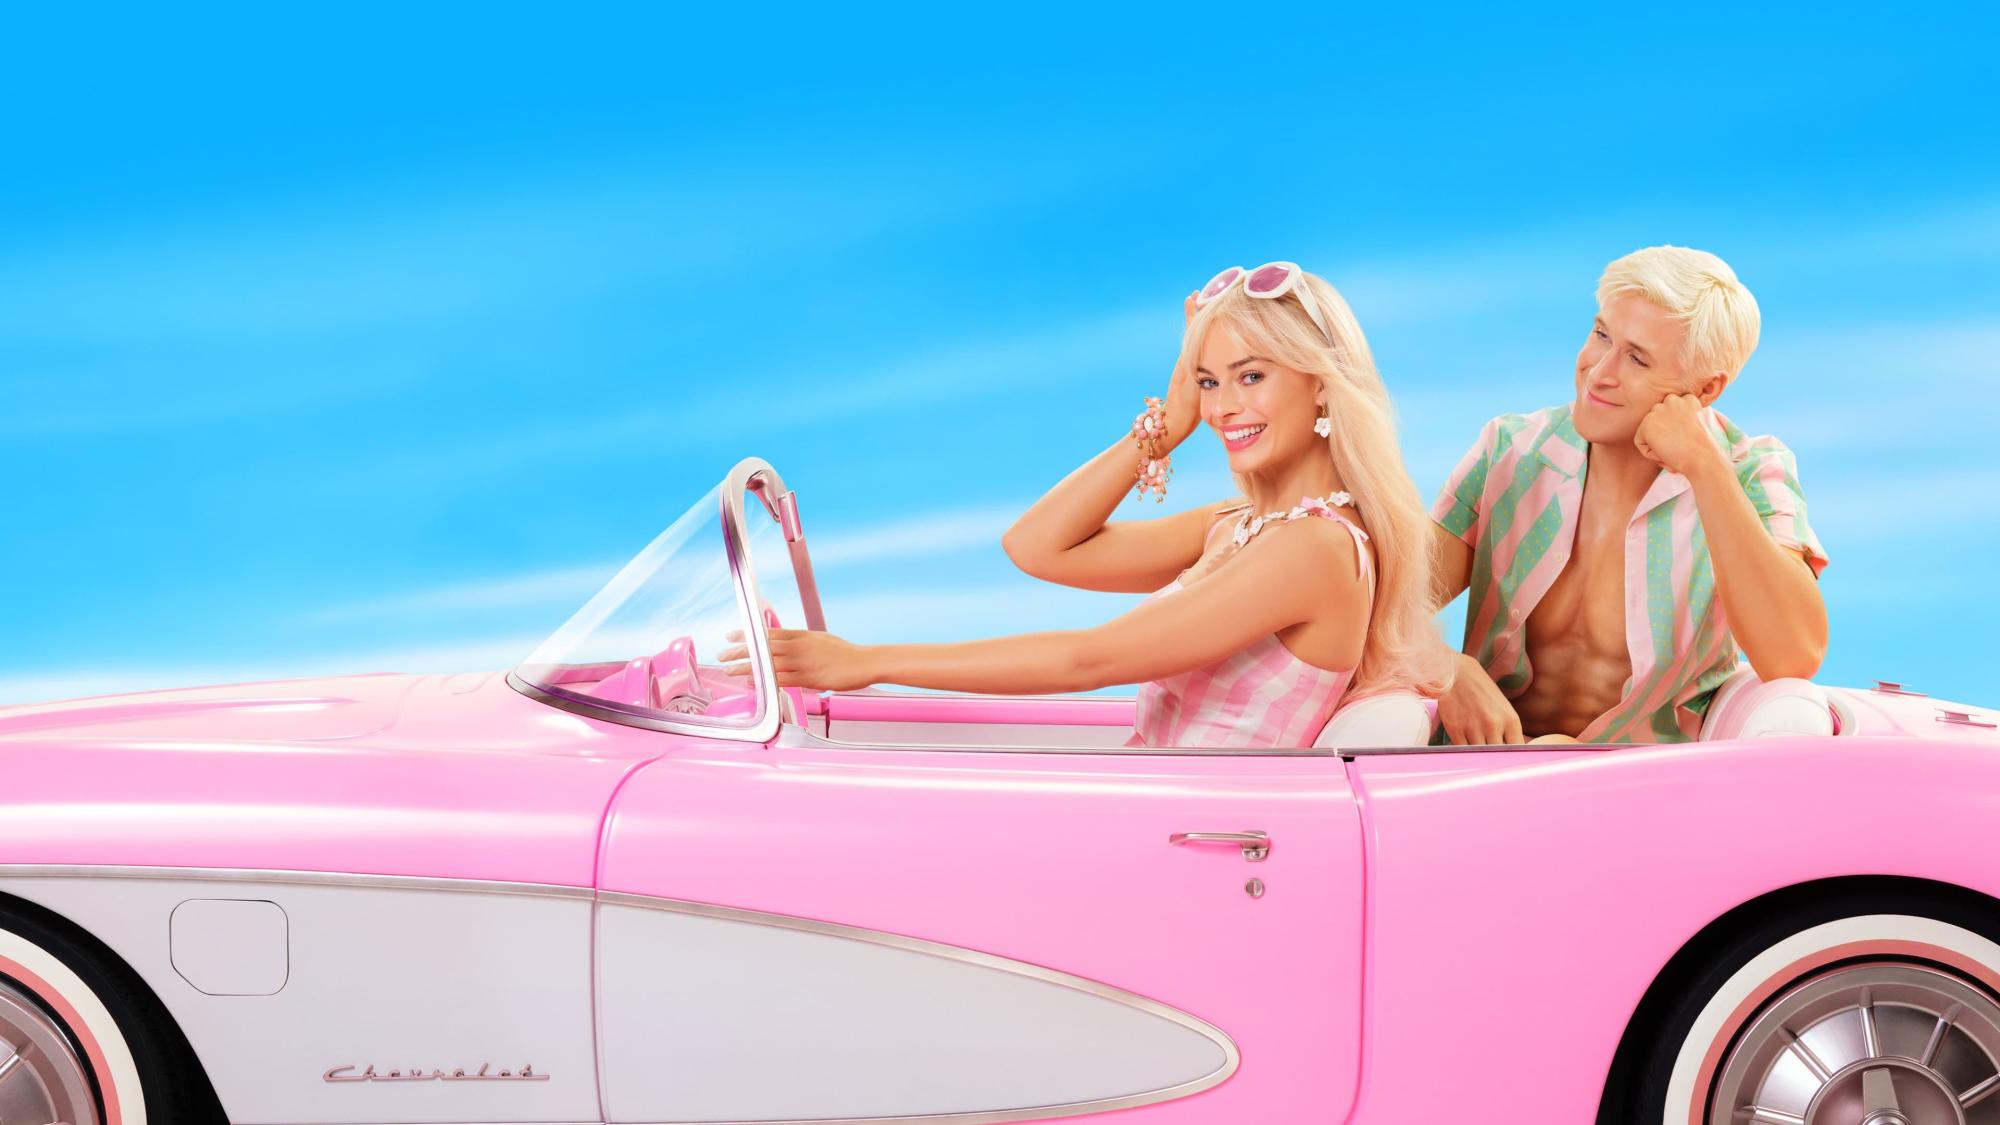 Backdrop Image for Barbie